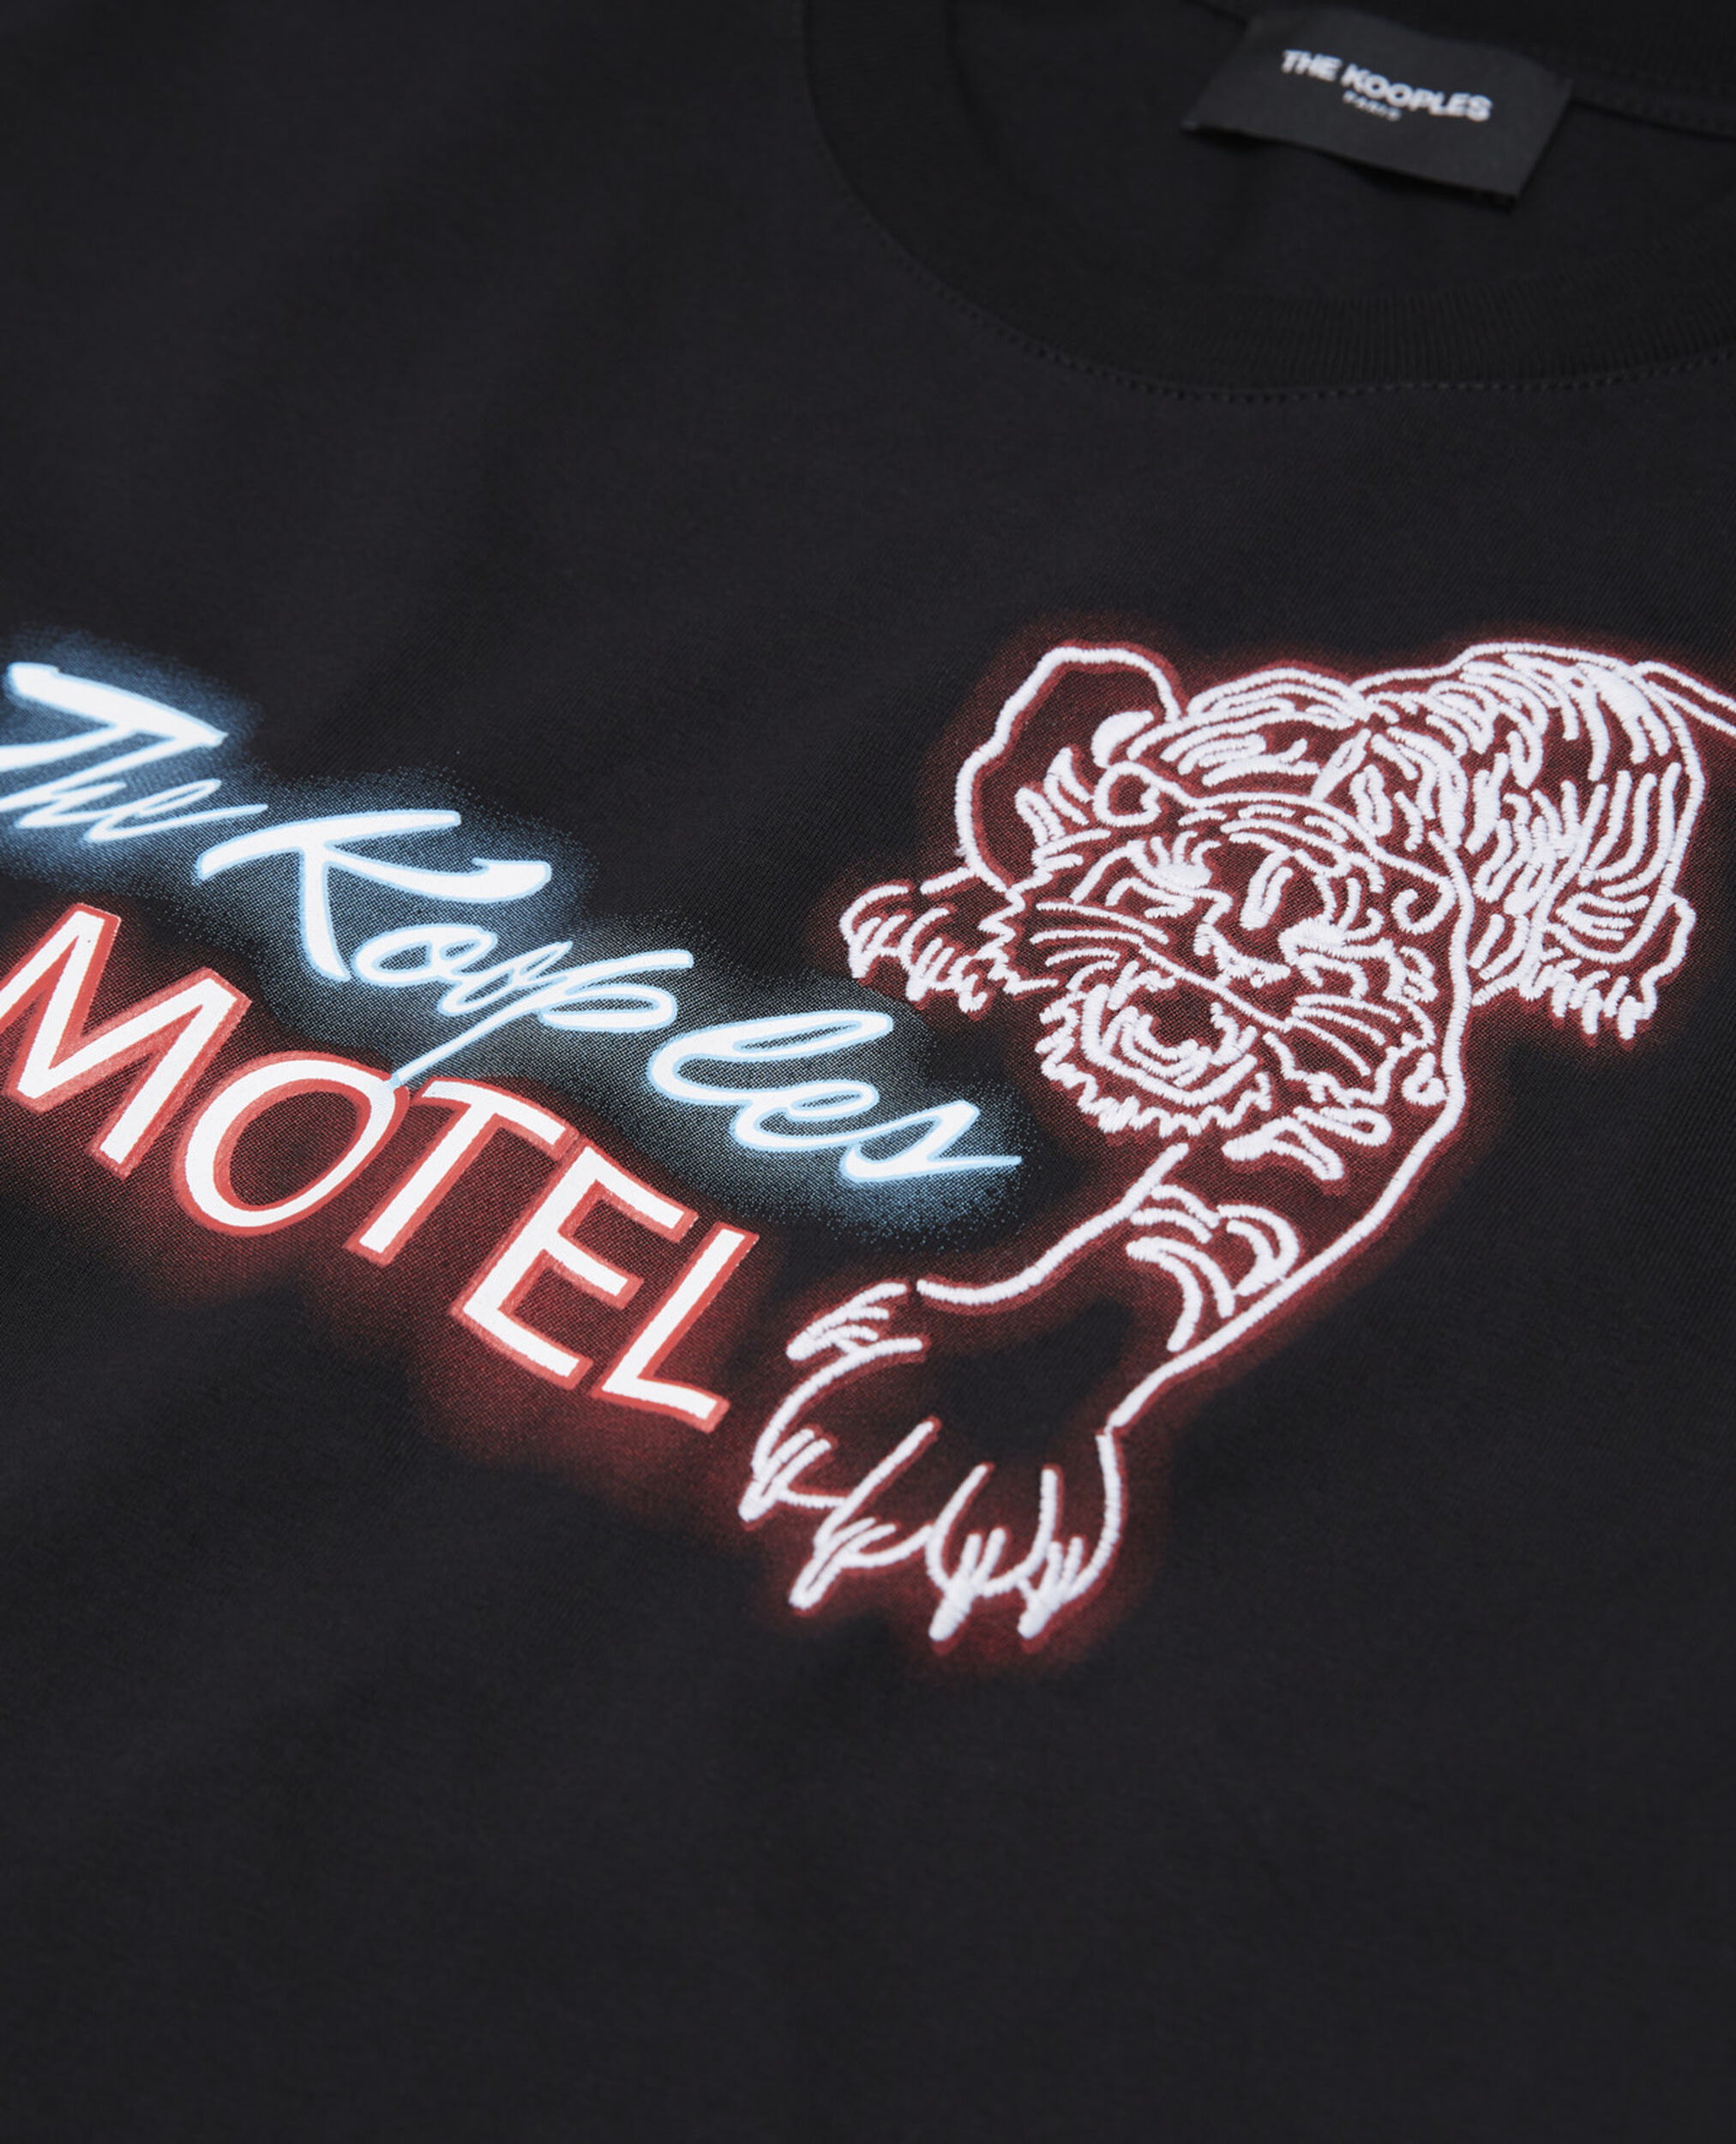 T-shirt The Kooples Motel, BLACK, hi-res image number null